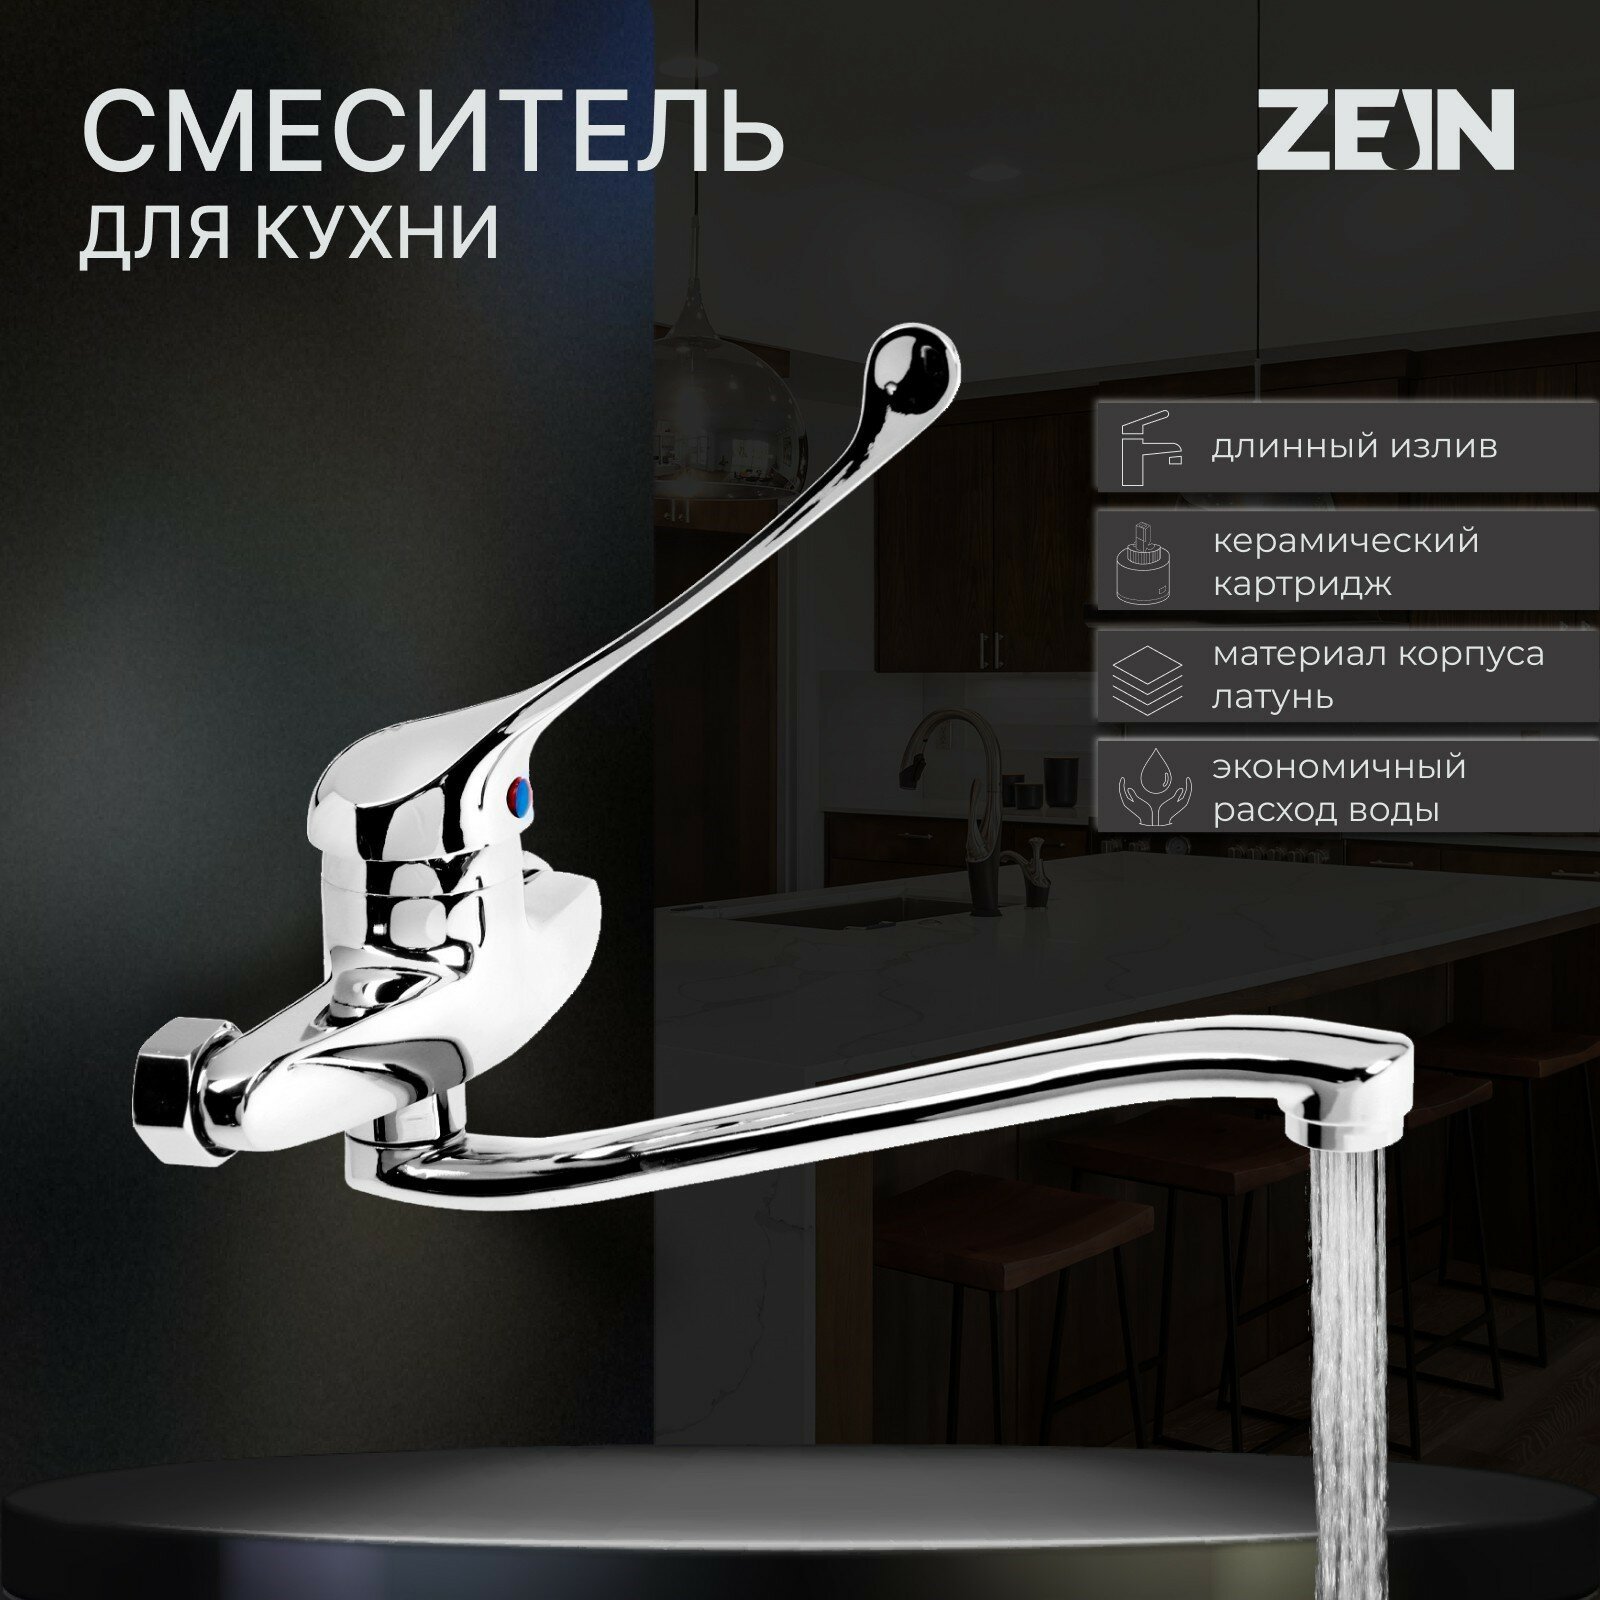 Смеситель для кухни ZC2040, настенный, картридж керамика 35 мм, хром